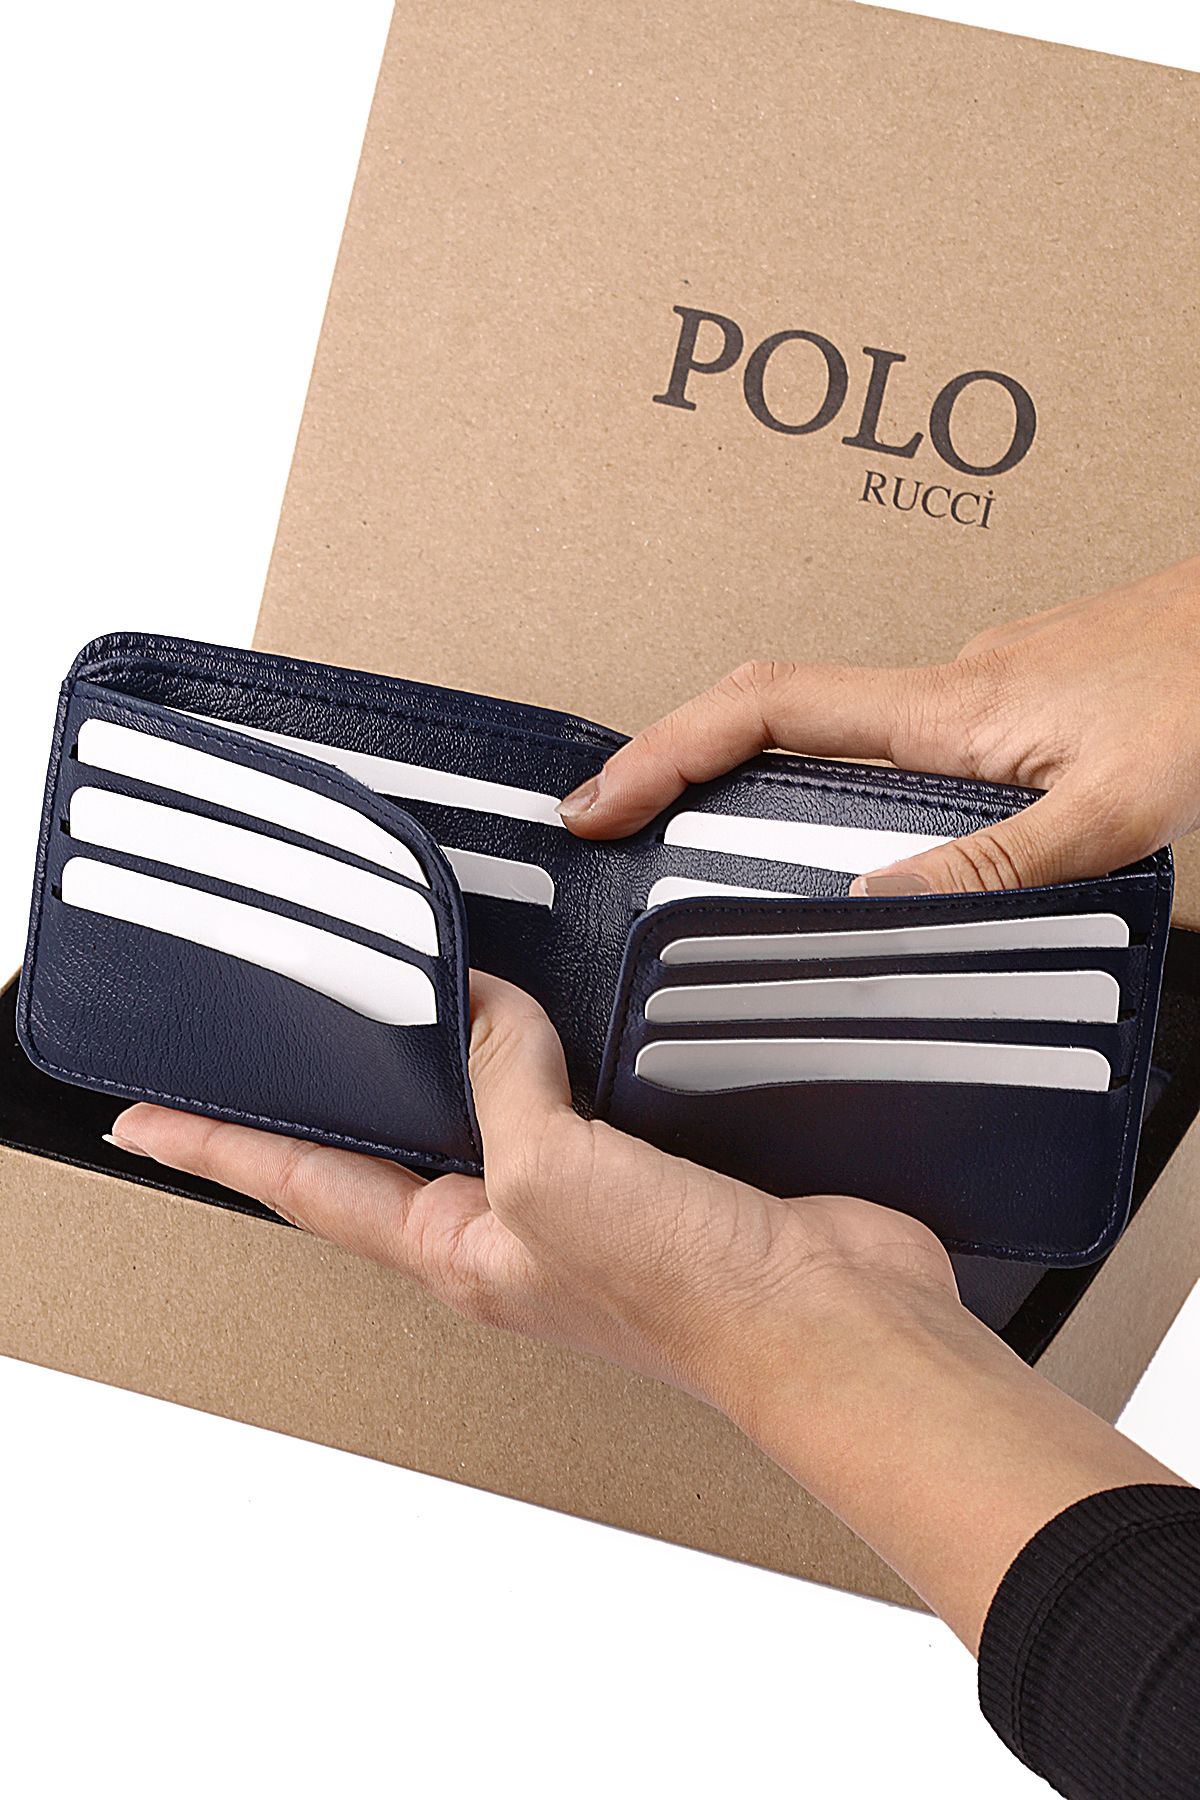 Polo Rucci Erkek Set Kombin Kol Saati Kemer Cüzdan Gümüş İçi Lacivert Renk PL-0804E1